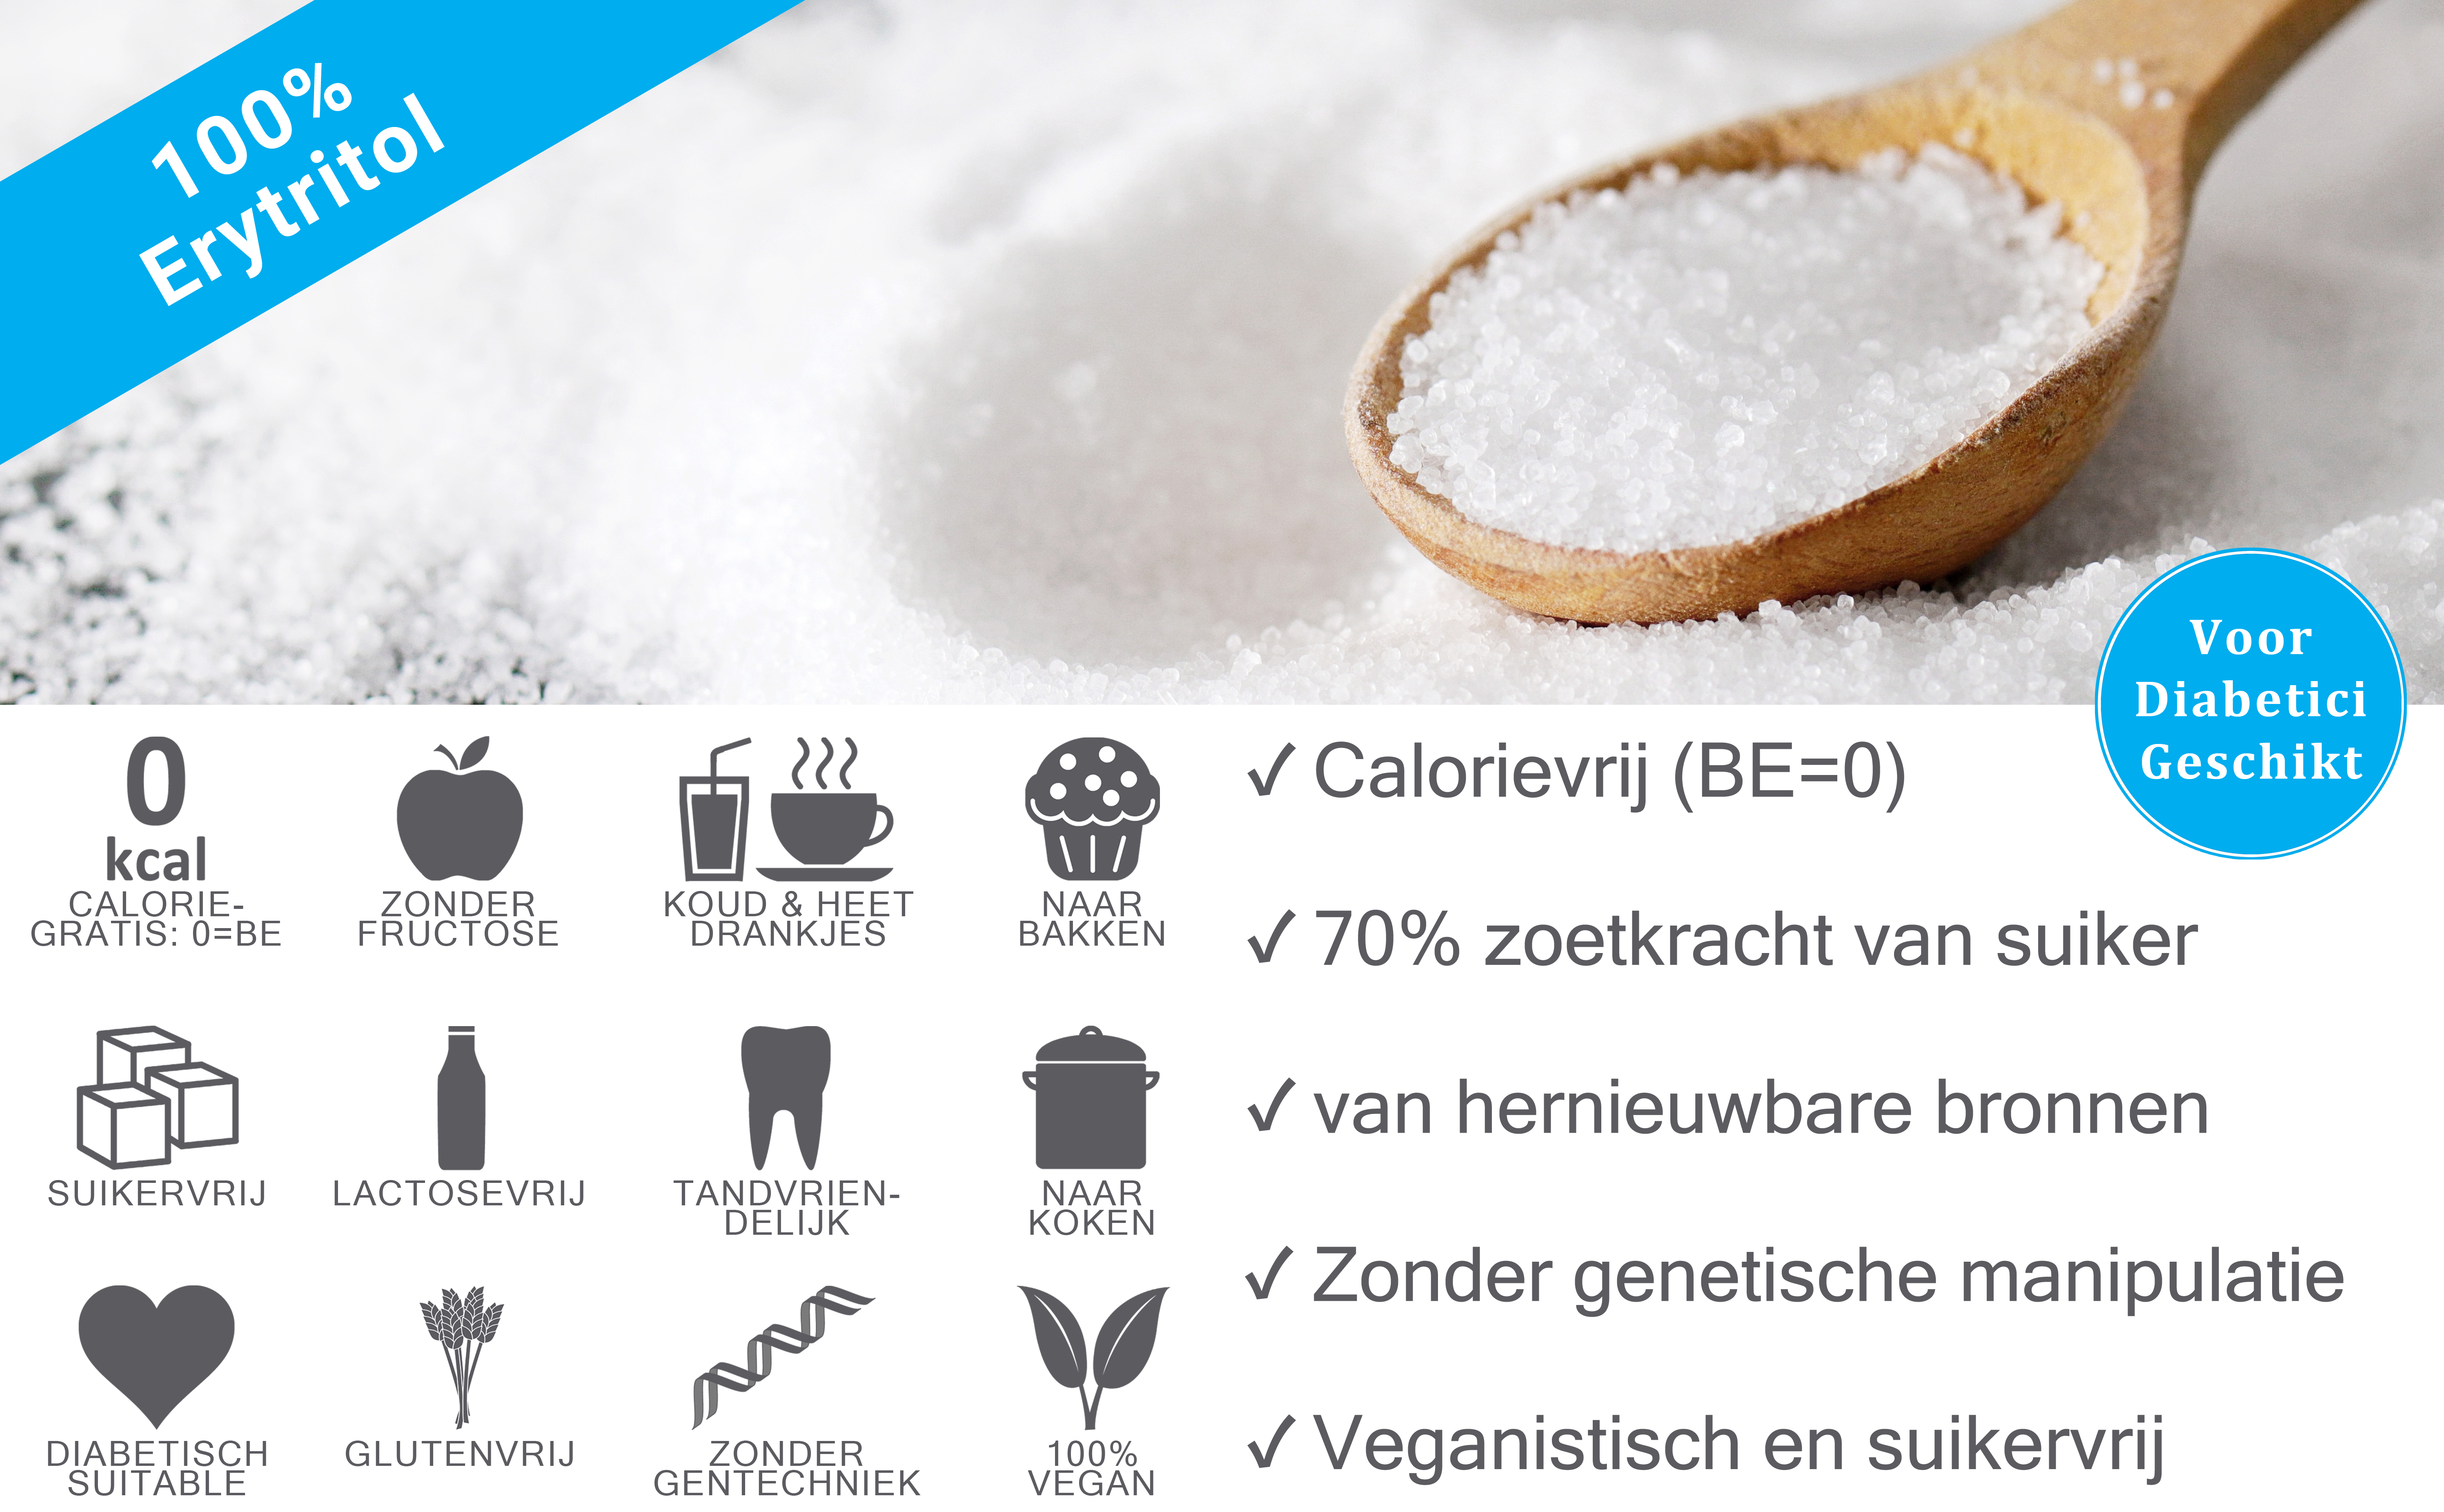 Erythritol behoort tot de suikeralcoholen en wordt gebruikt als suikervervanger. Het heeft ongeveer 60-70 procent van de zoetkracht van suiker.